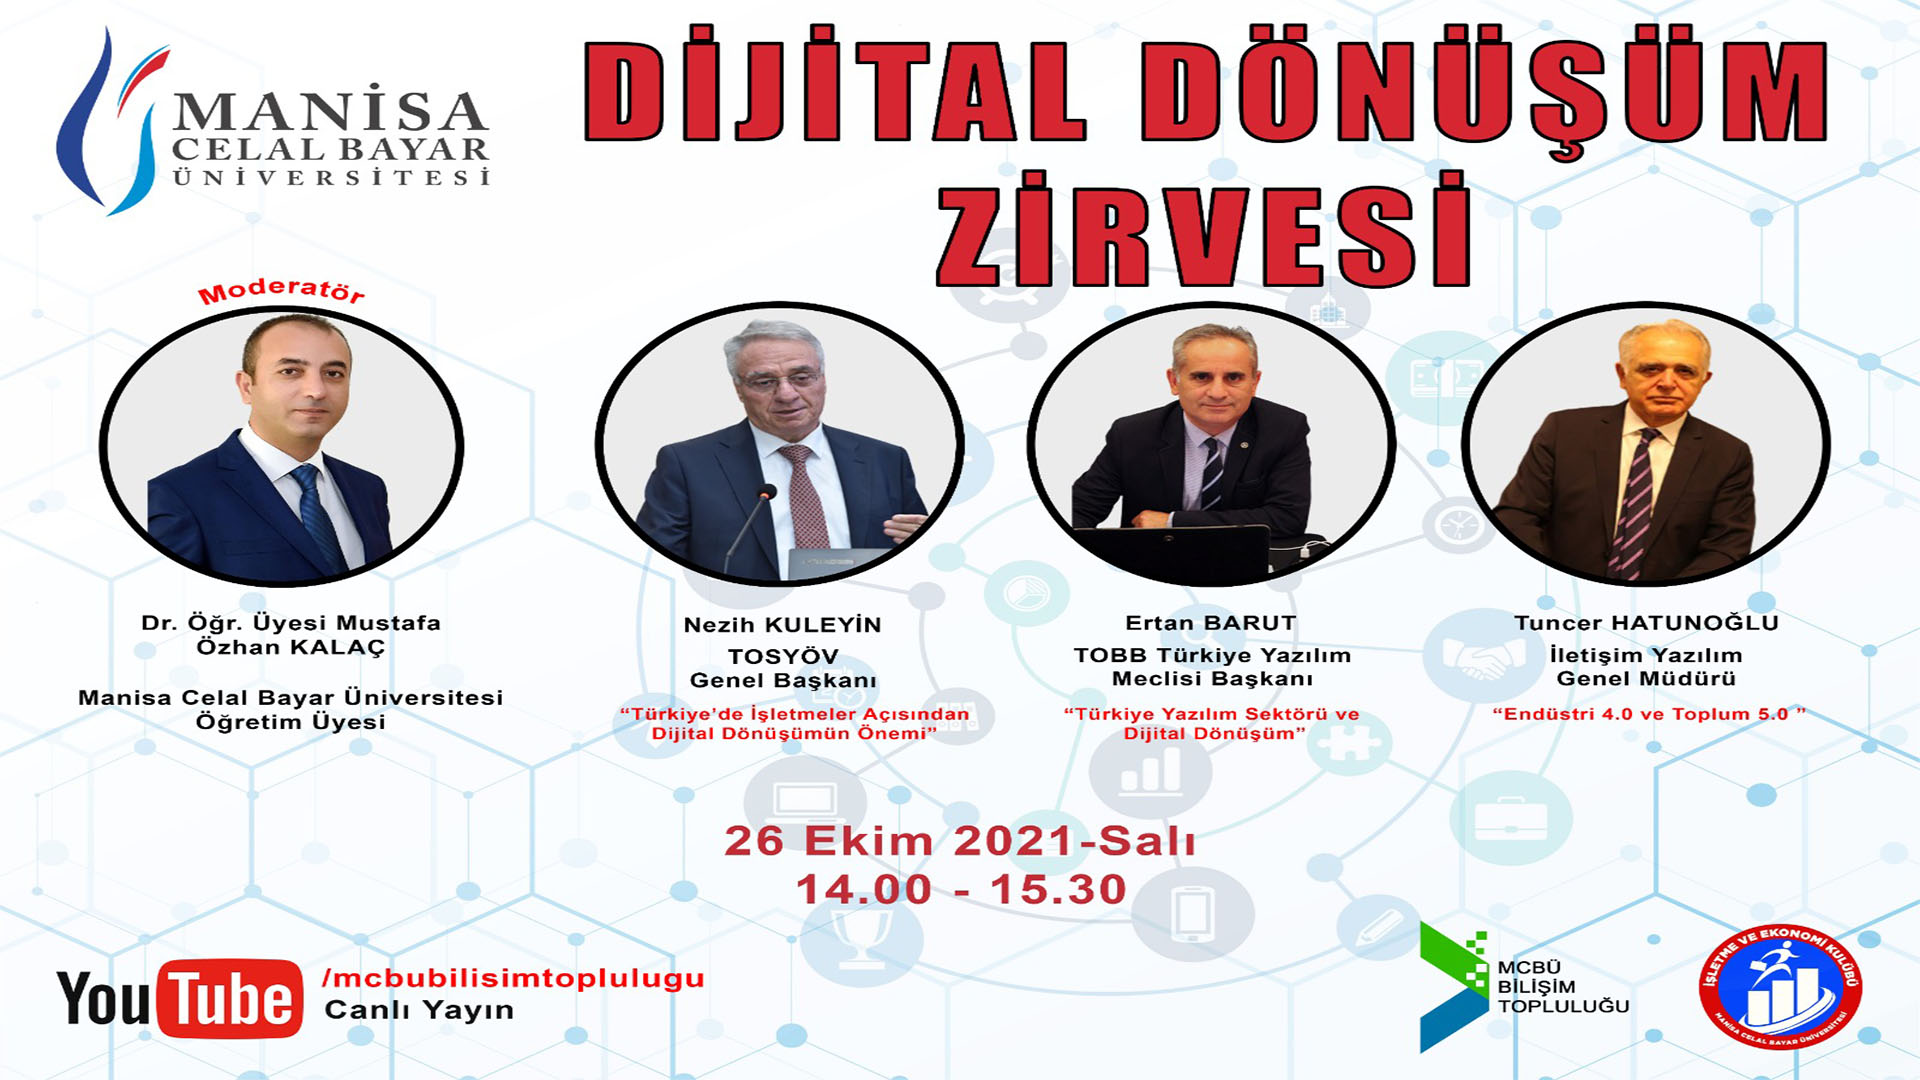 Türkiye Yazılım Sektörü ve Dijital Dönüşüm